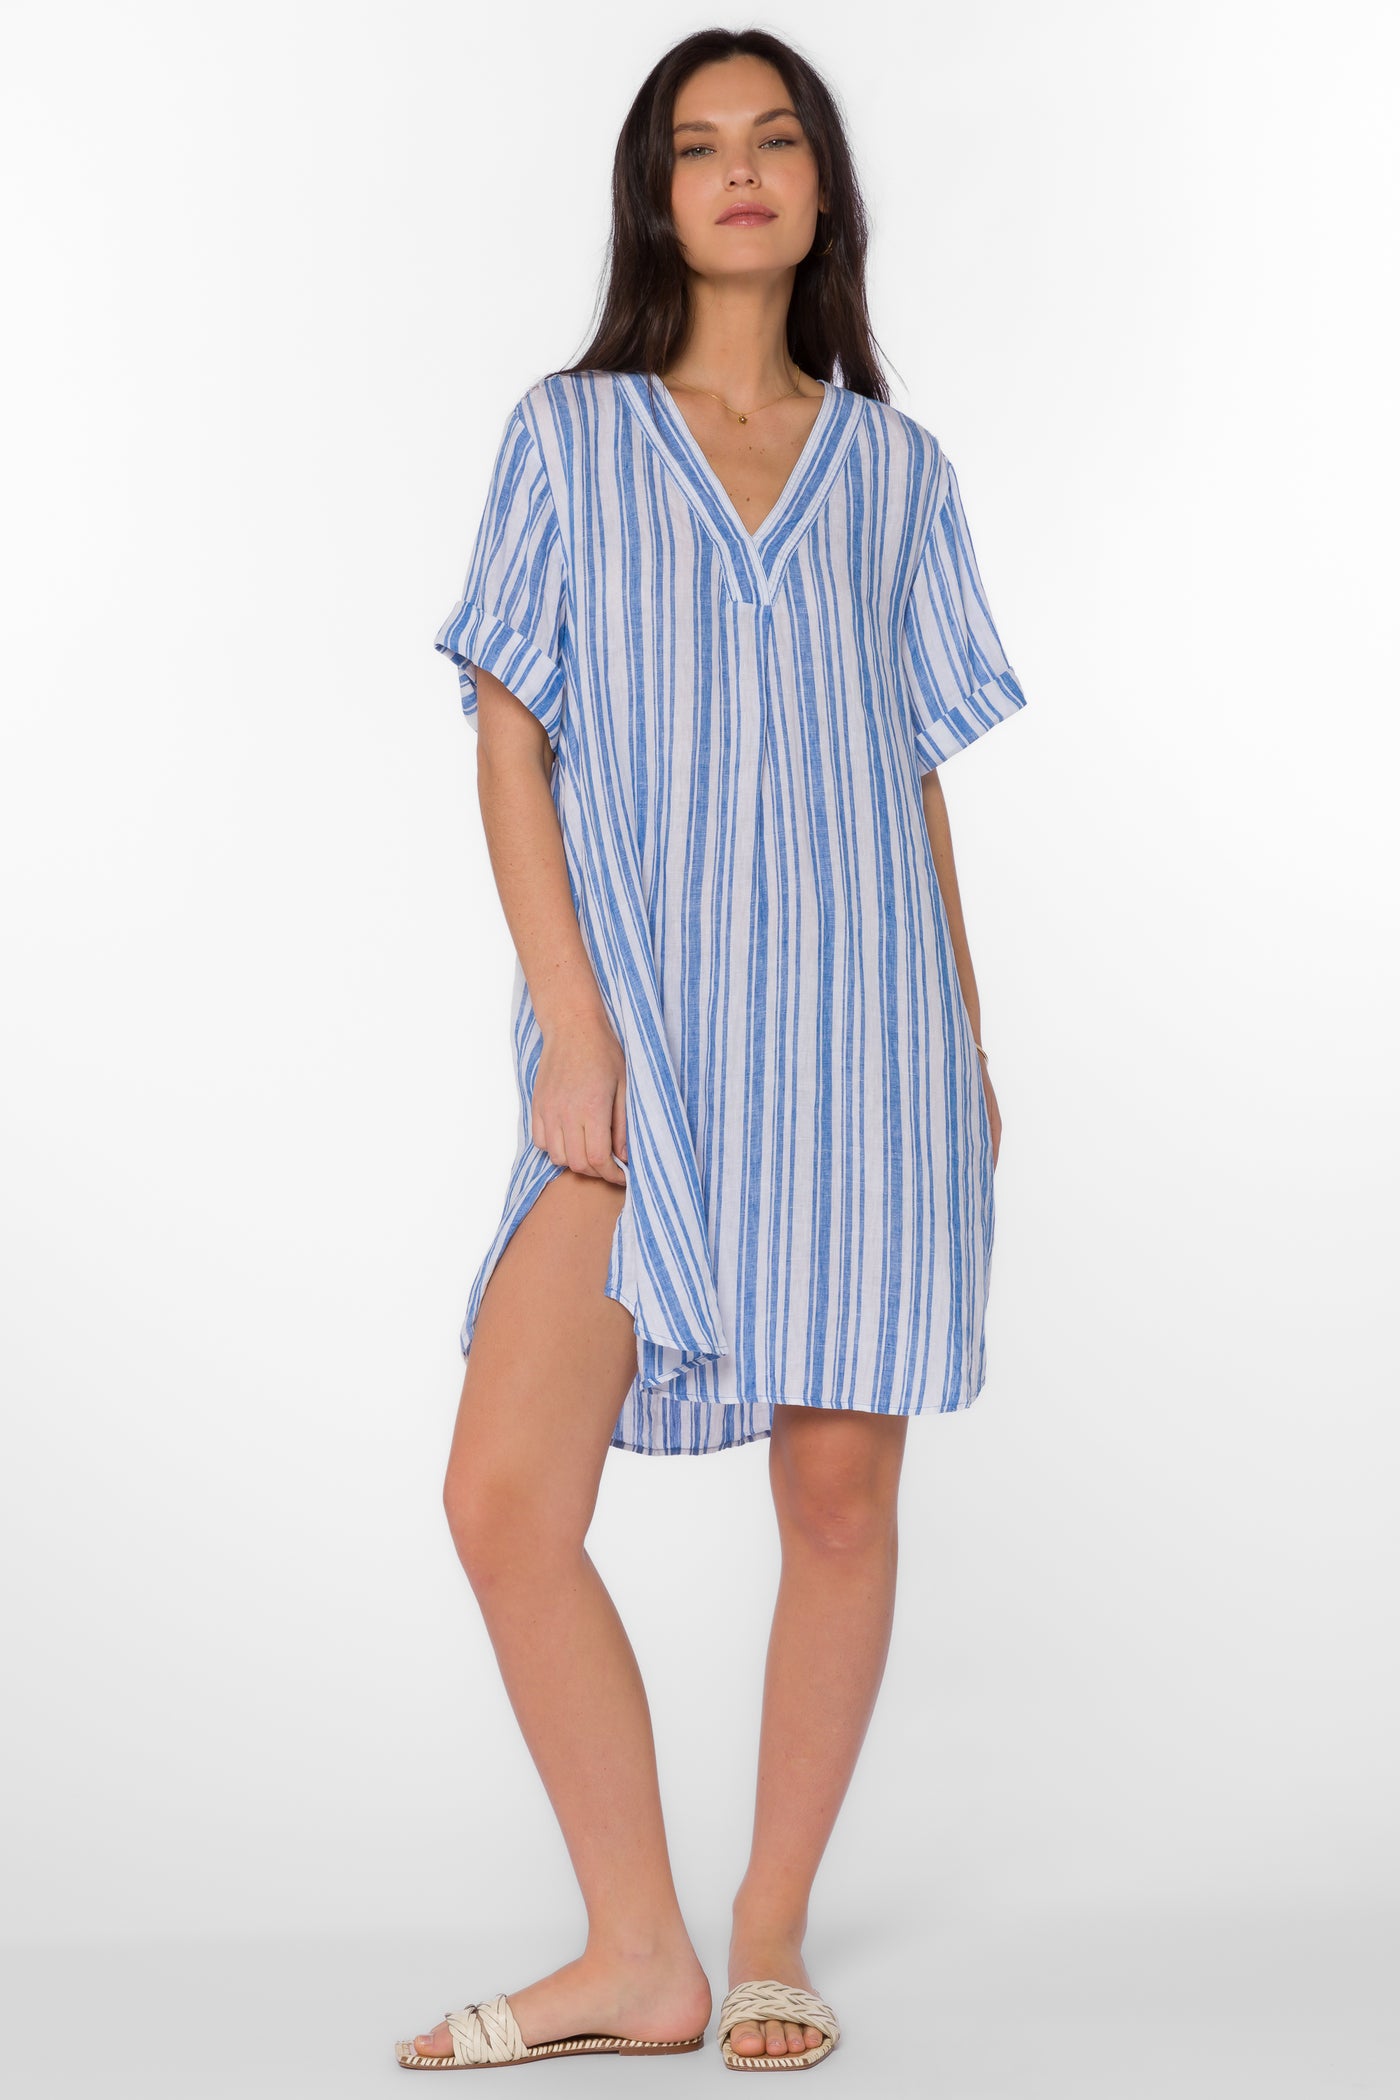 Wilda Blue Stripe Dress - Tops - Velvet Heart Clothing